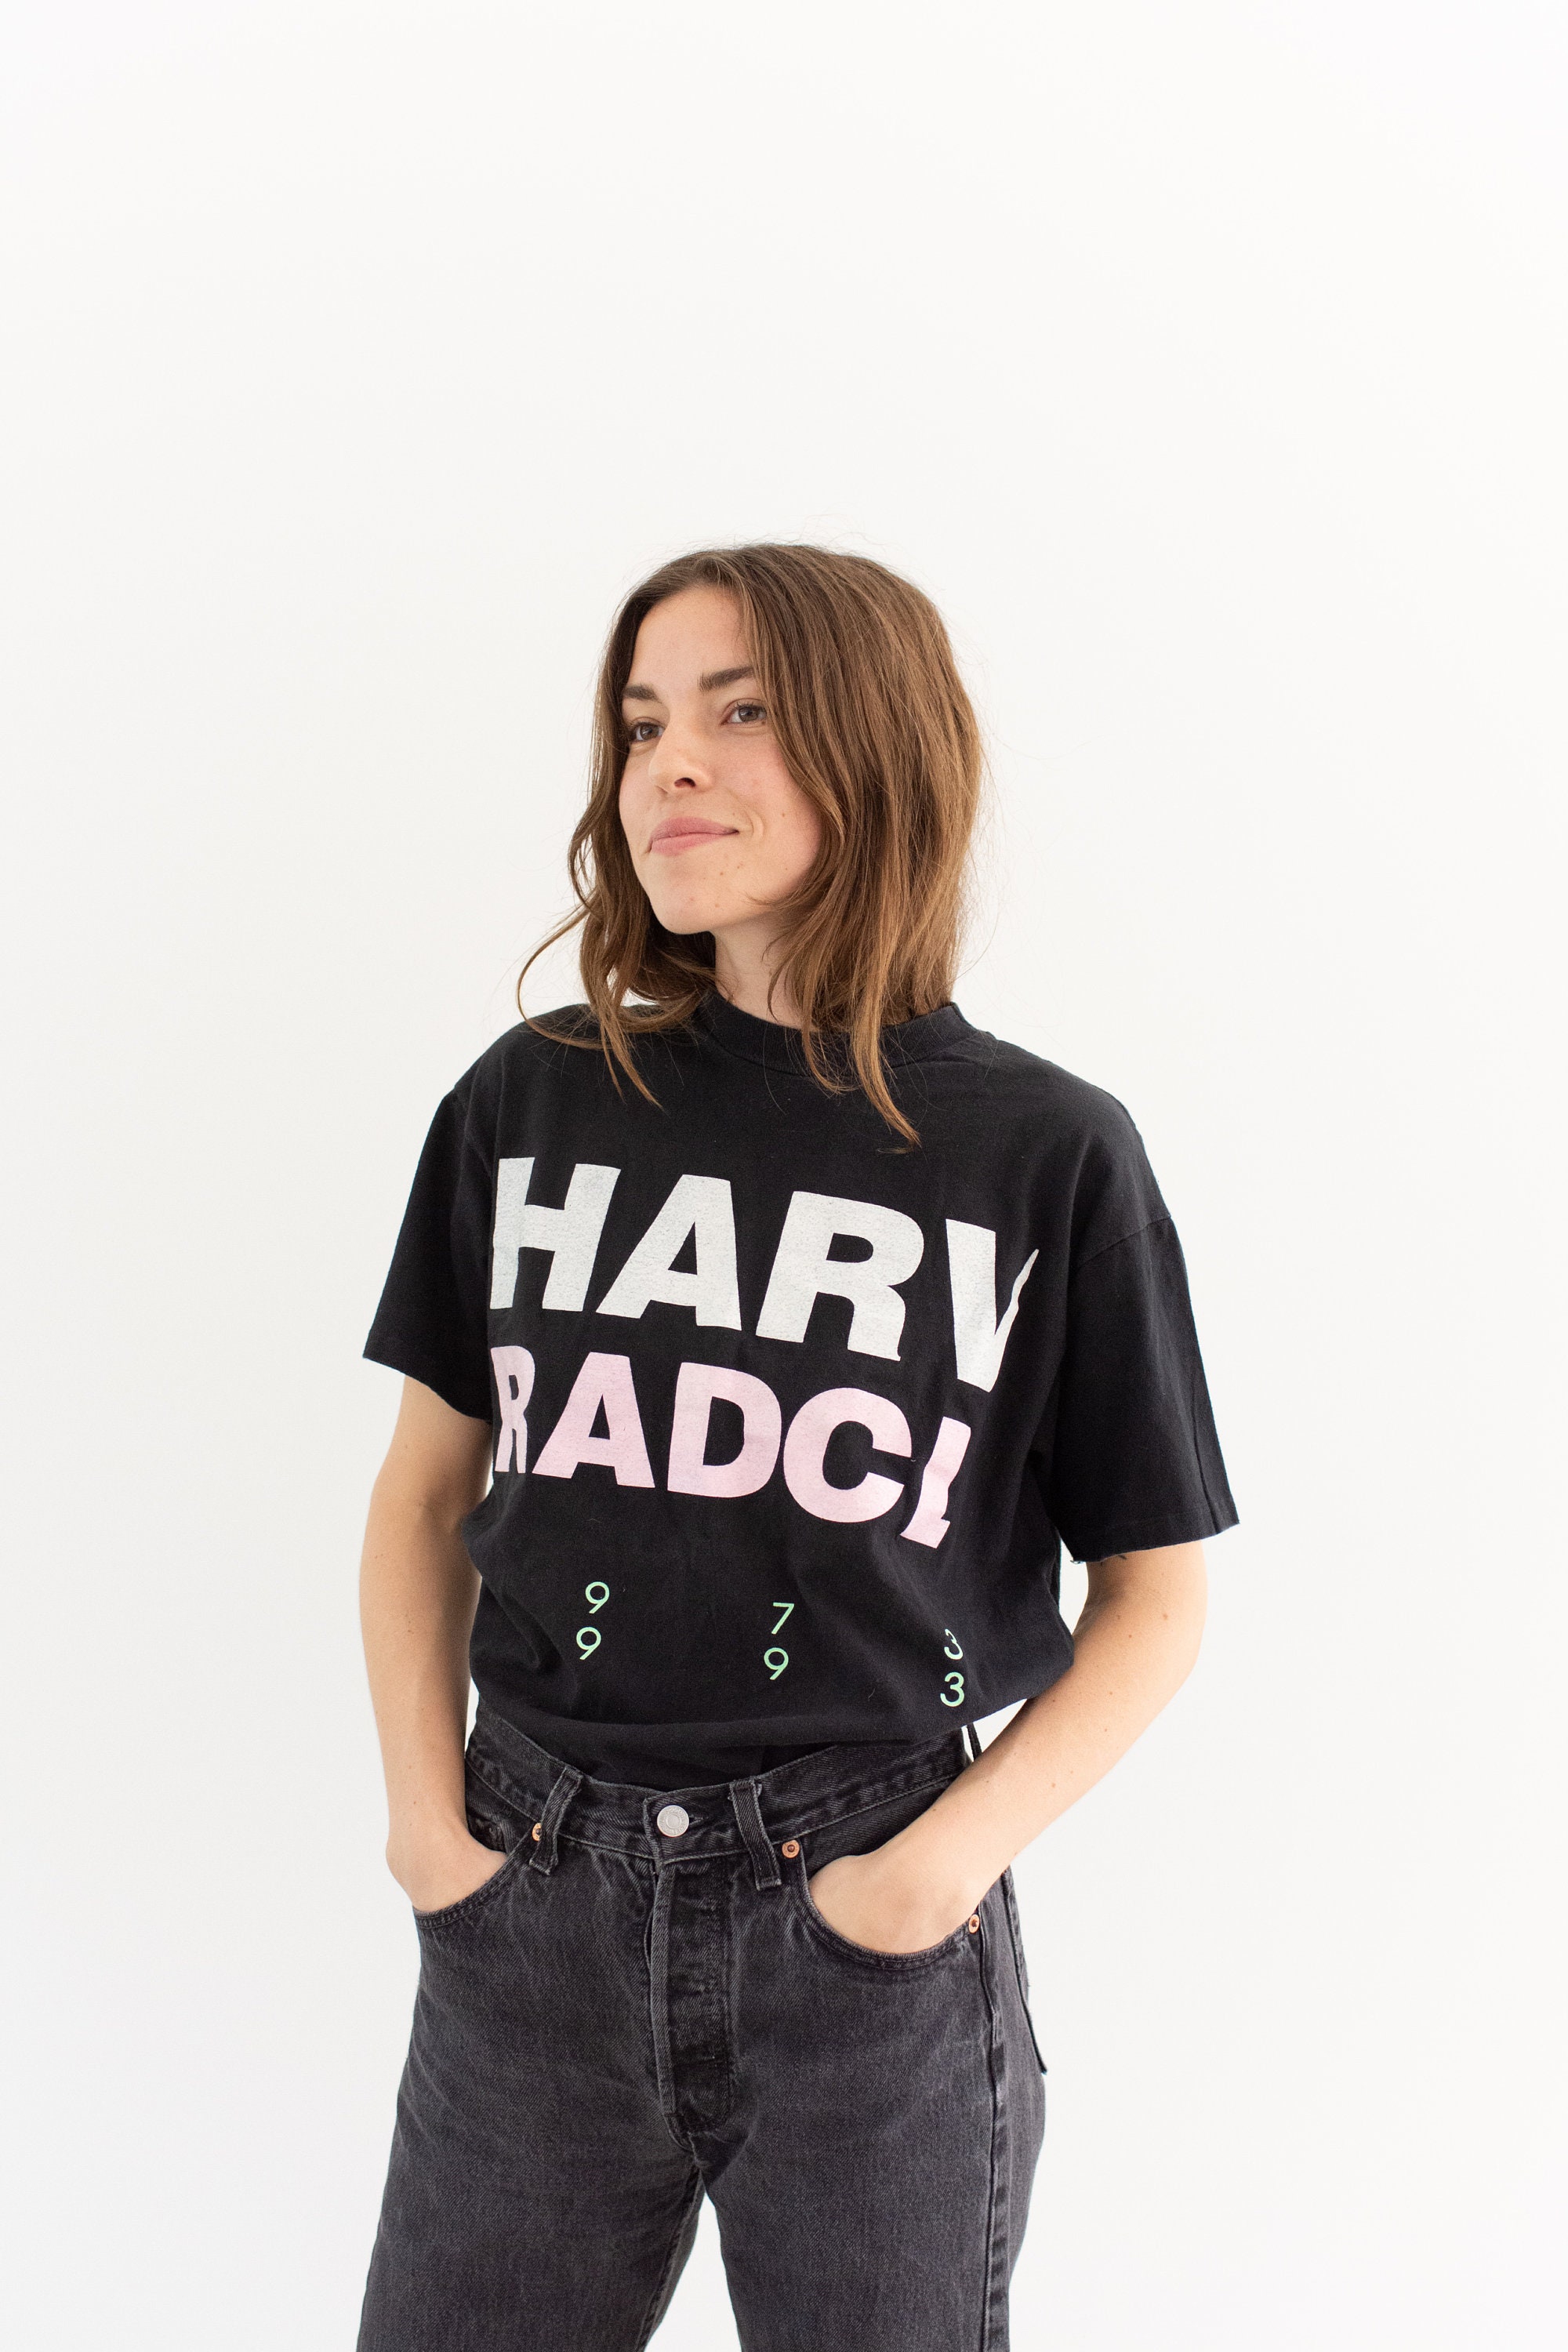 Black Harvard Radcliffe Tee / Camiseta cuello de Etsy España